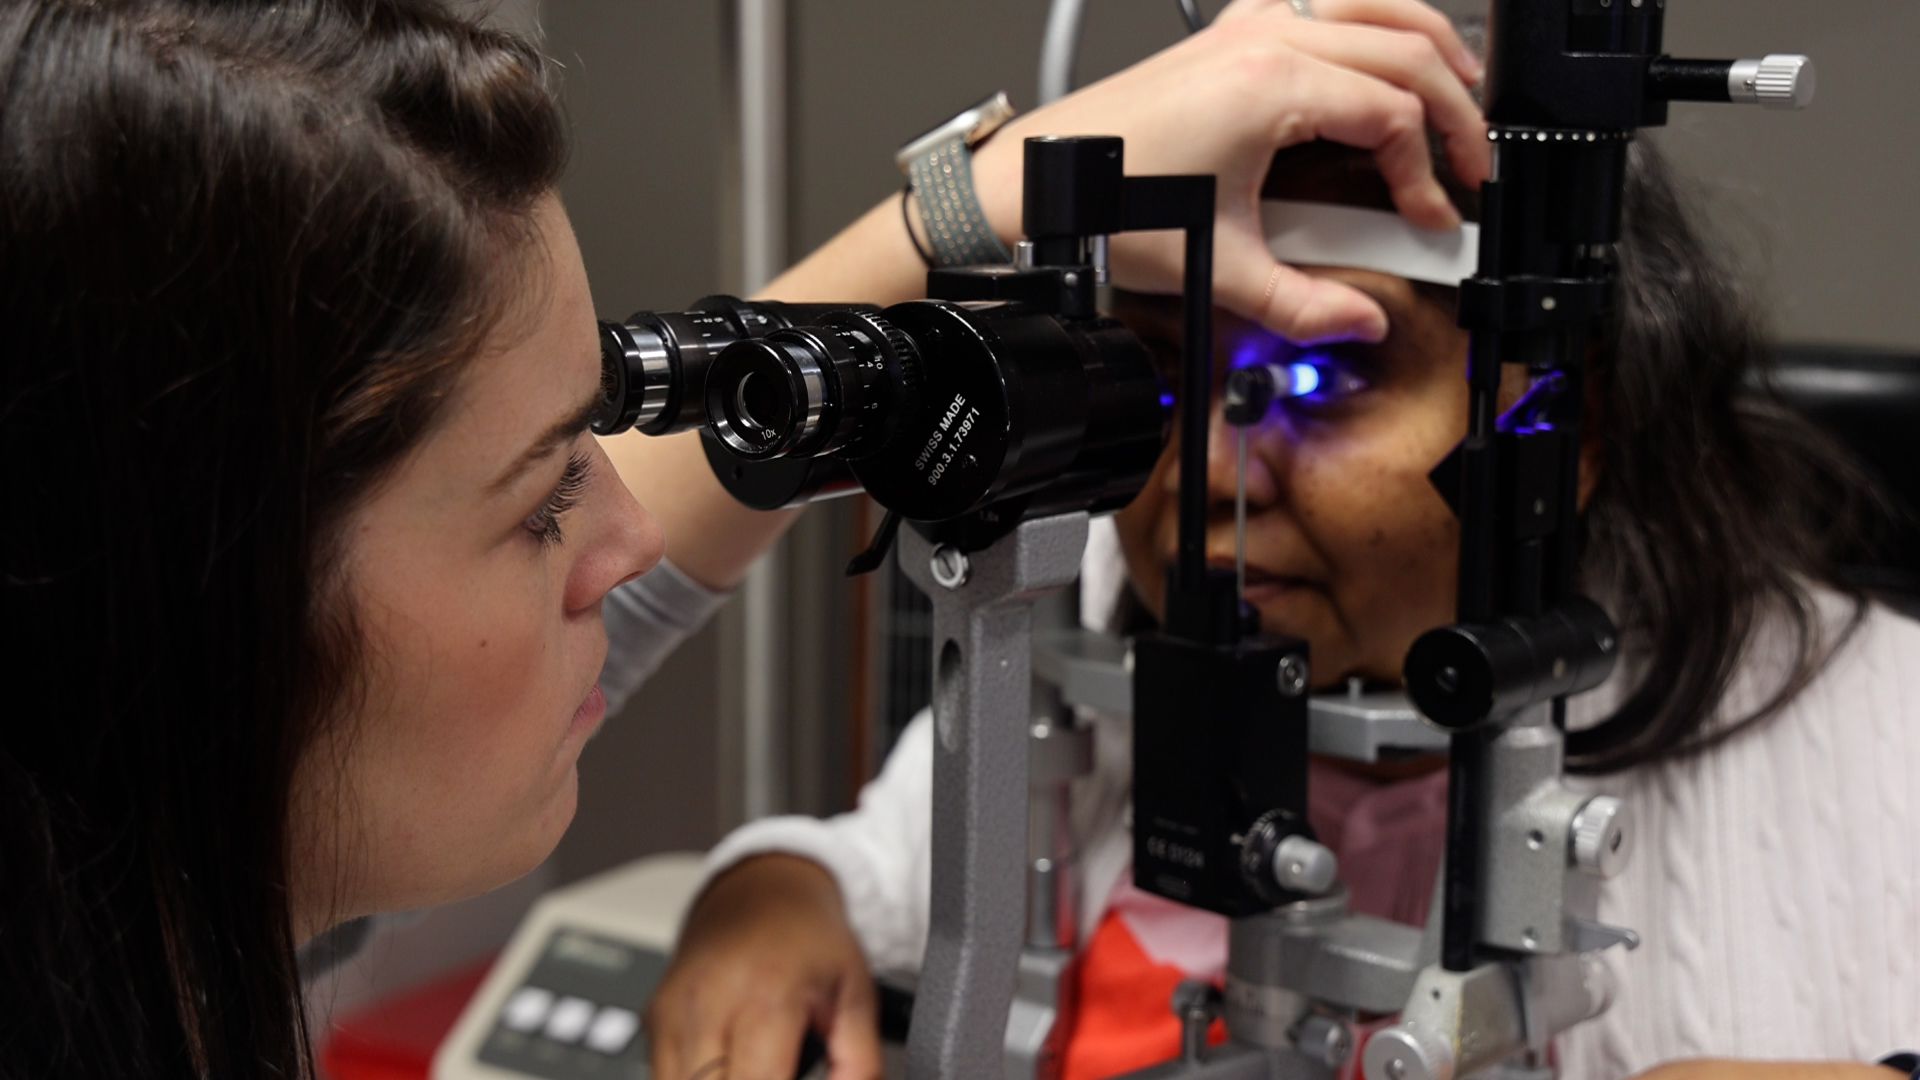 A Vistar employee giving an eye exam to a Vistar patient